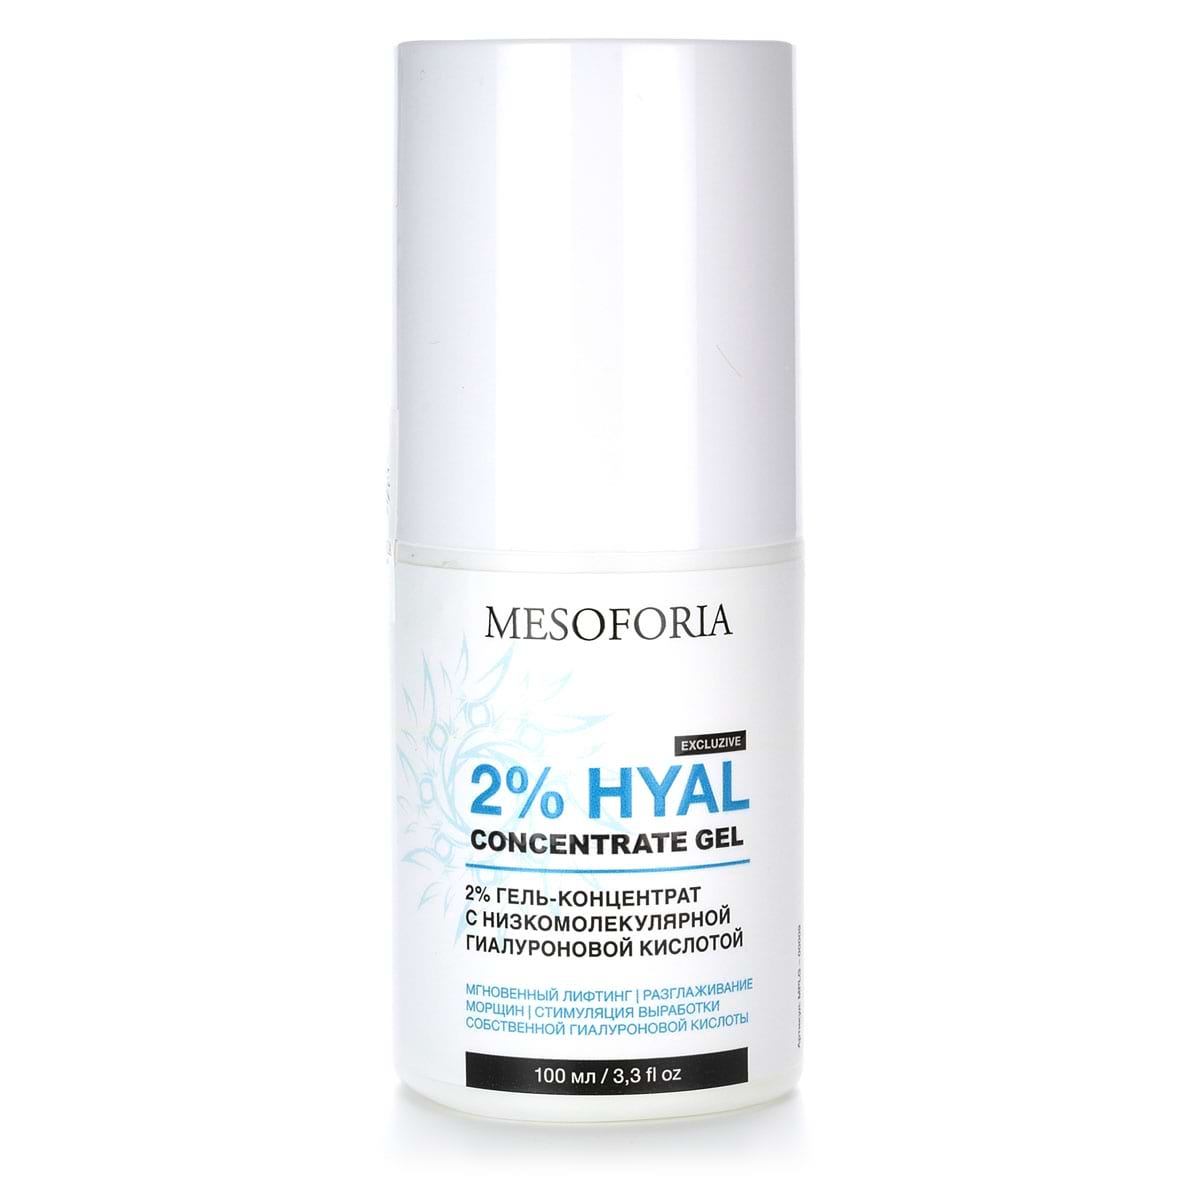 2% Hyal Concentrate Gel / 2% гель-концентрат с низкомолекулярной гиалуроновой кислотой, Mesoforia (Мезофория) – 100 мл